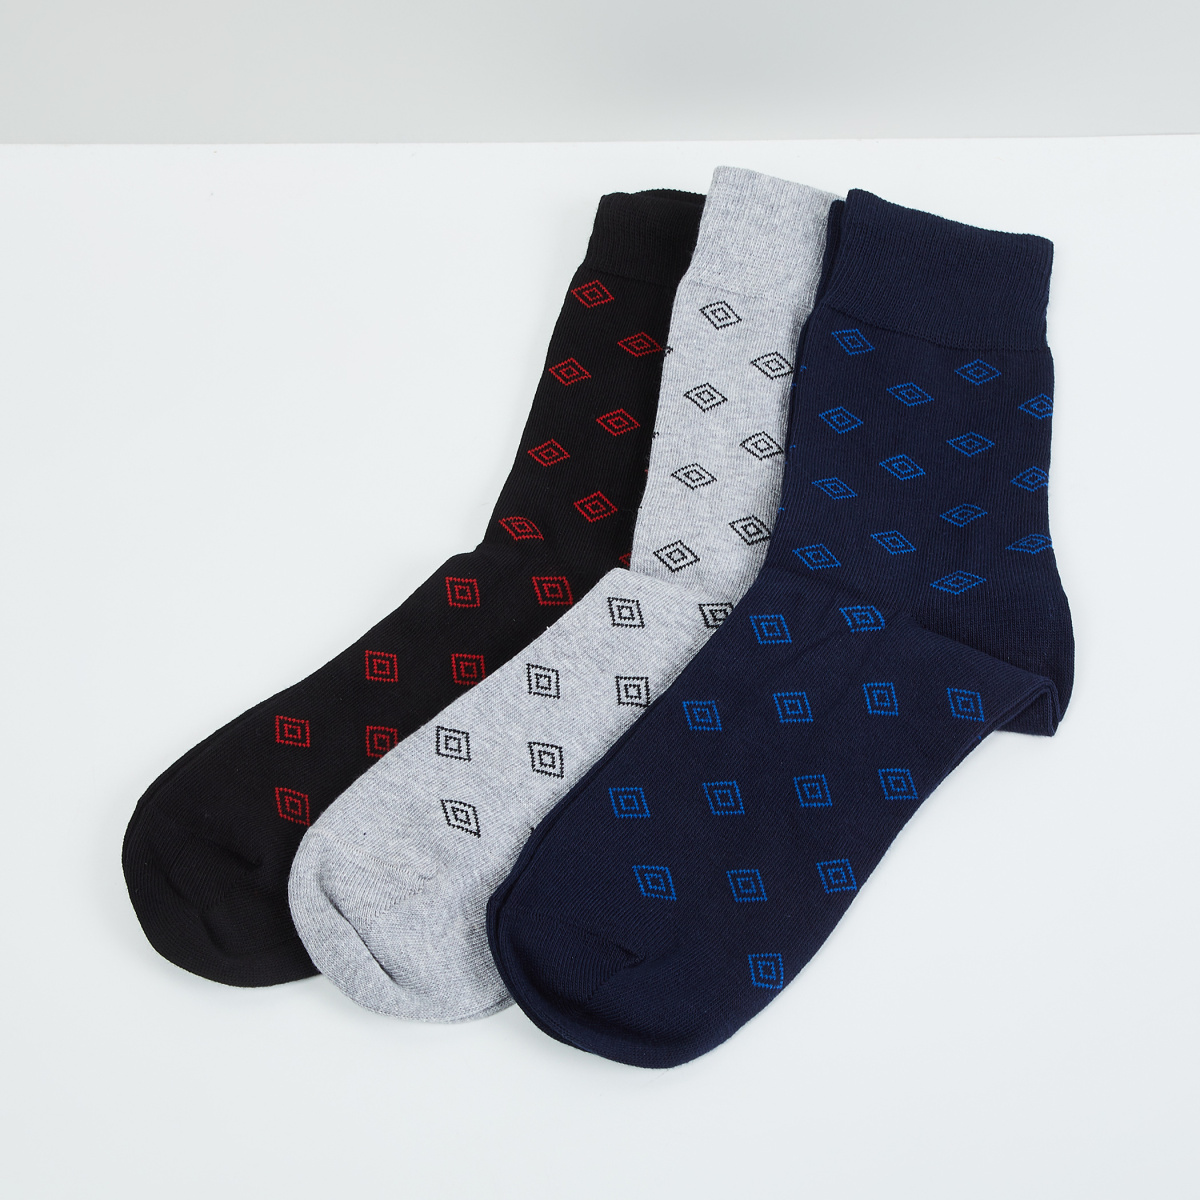 MAX Printed Calf Length Socks - Pack Of 3